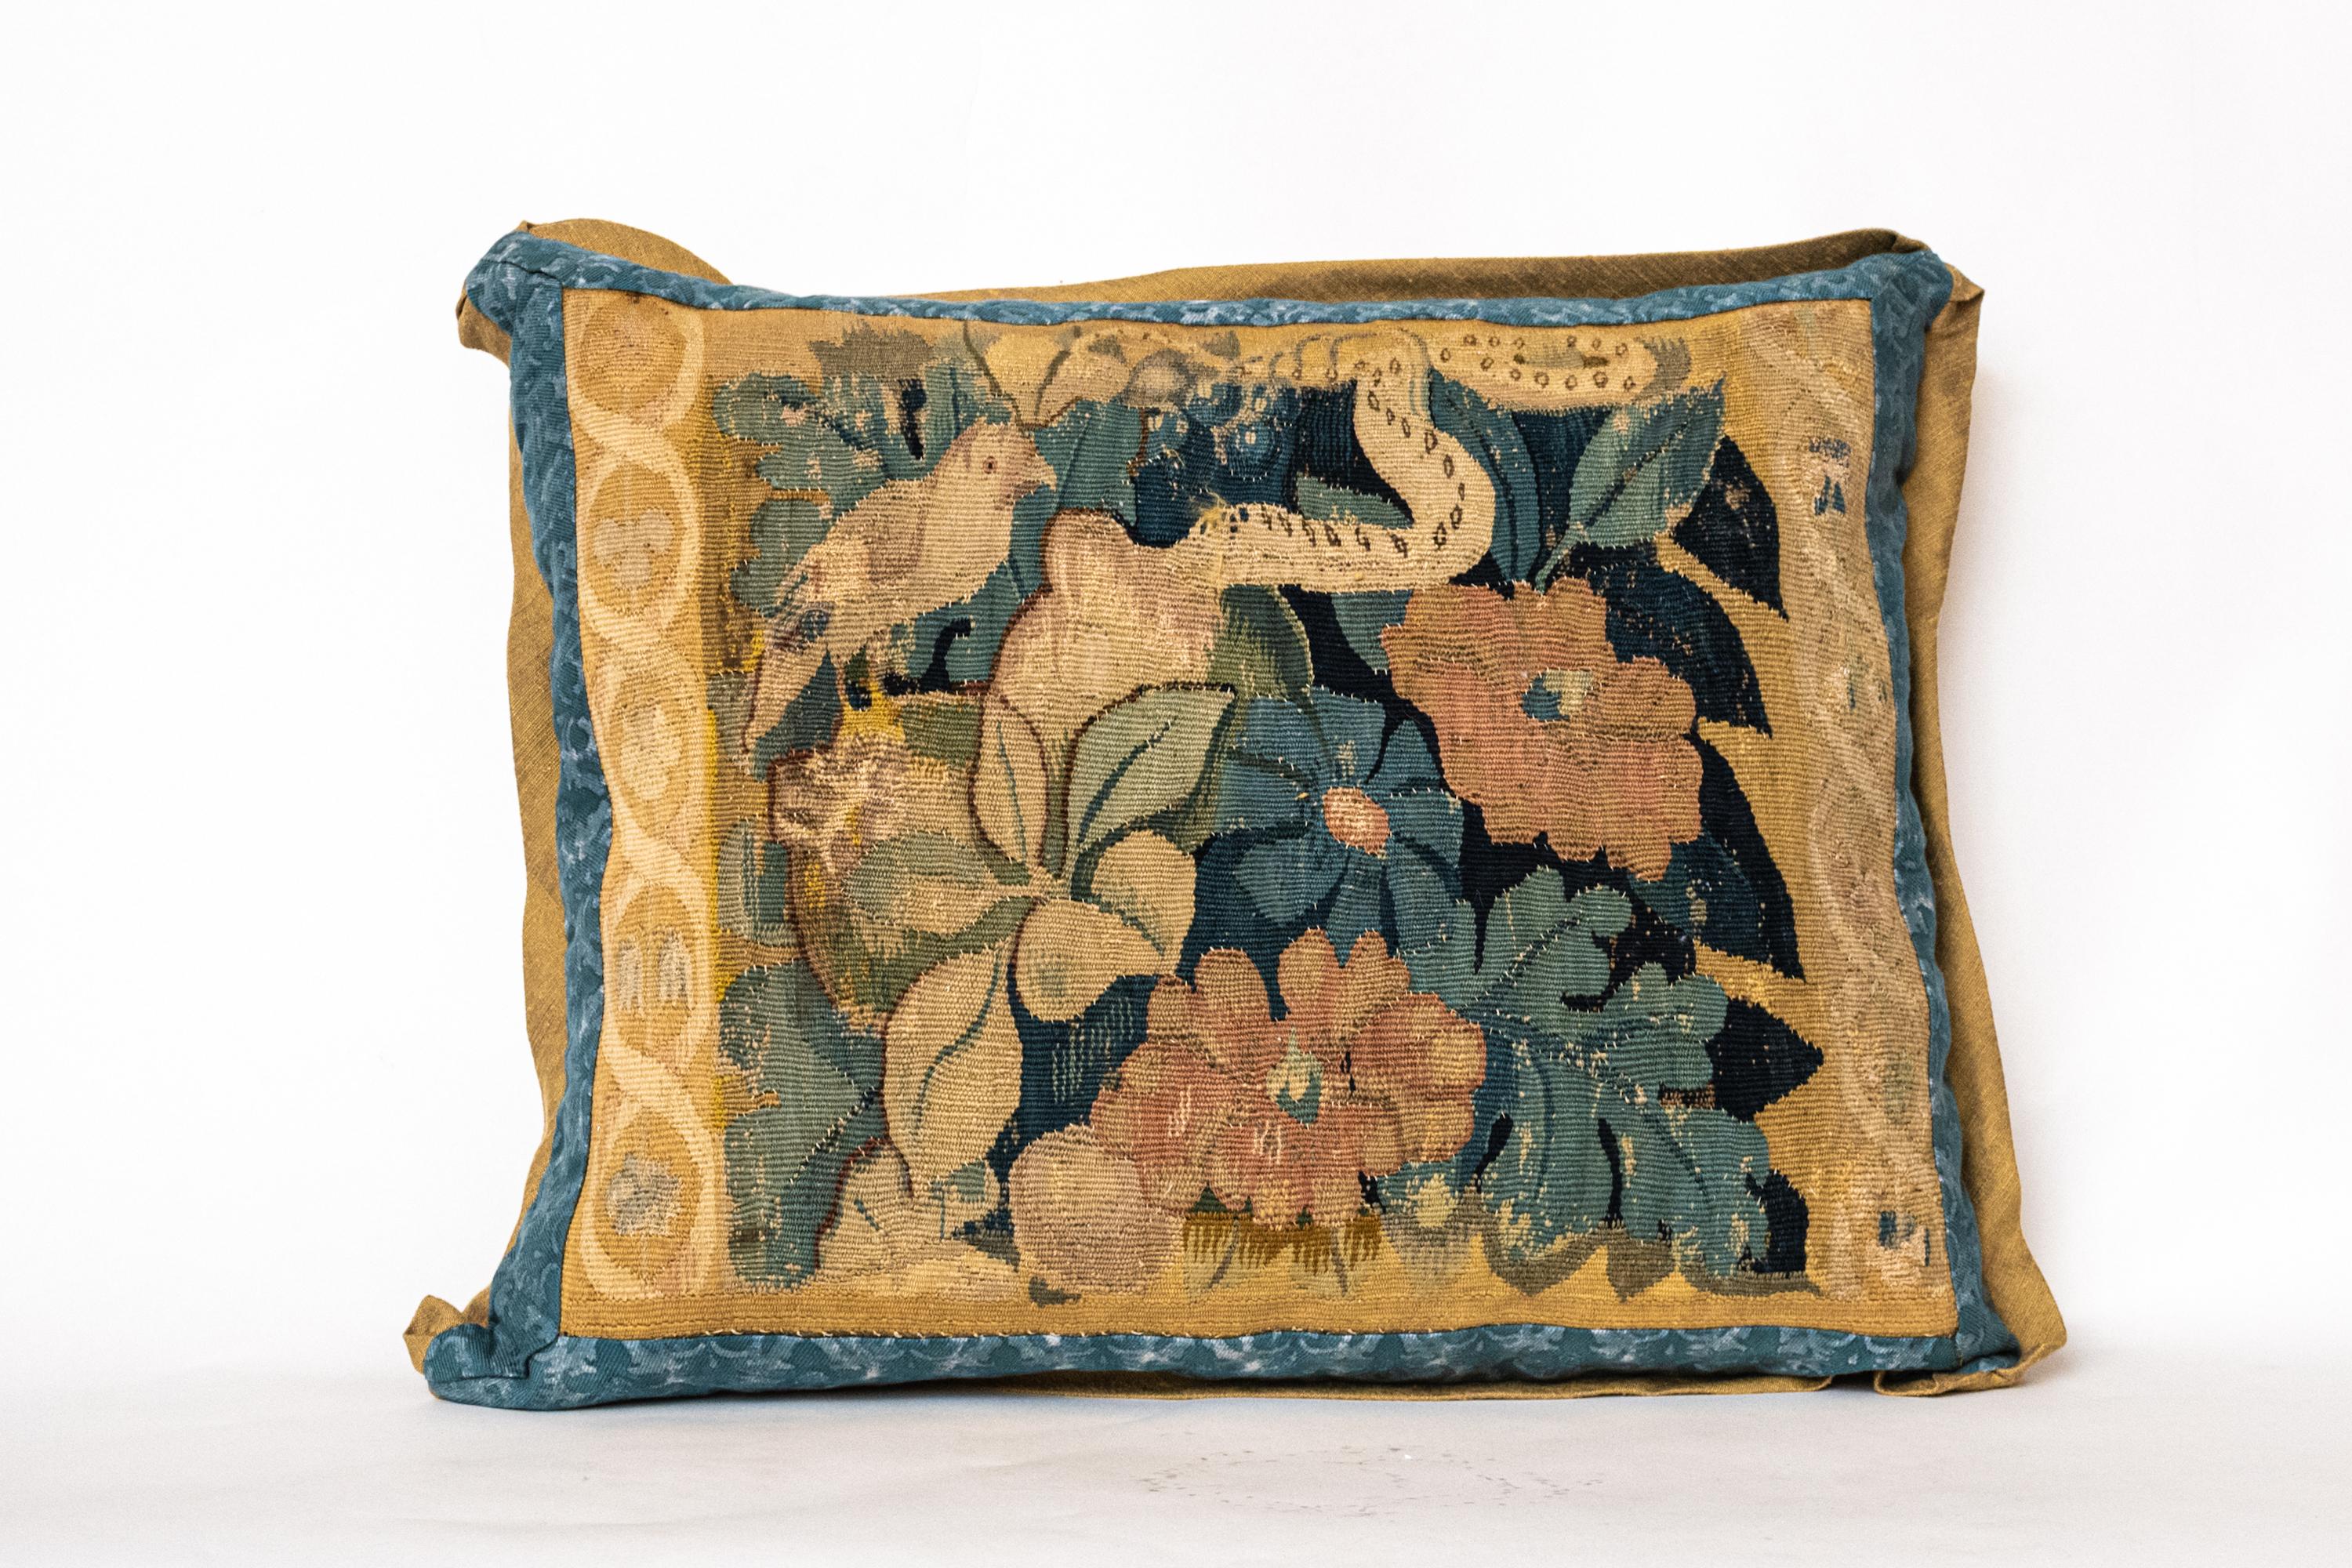 Coussin ancien en textile Fortuny représentant la tapisserie de Bruxelles du XVIIe siècle avec des motifs classiques de faune et de flore. Bords et dos biaisés en soie avec insert 50 duvet/50 plumes. Toutes les ventes sont finales

